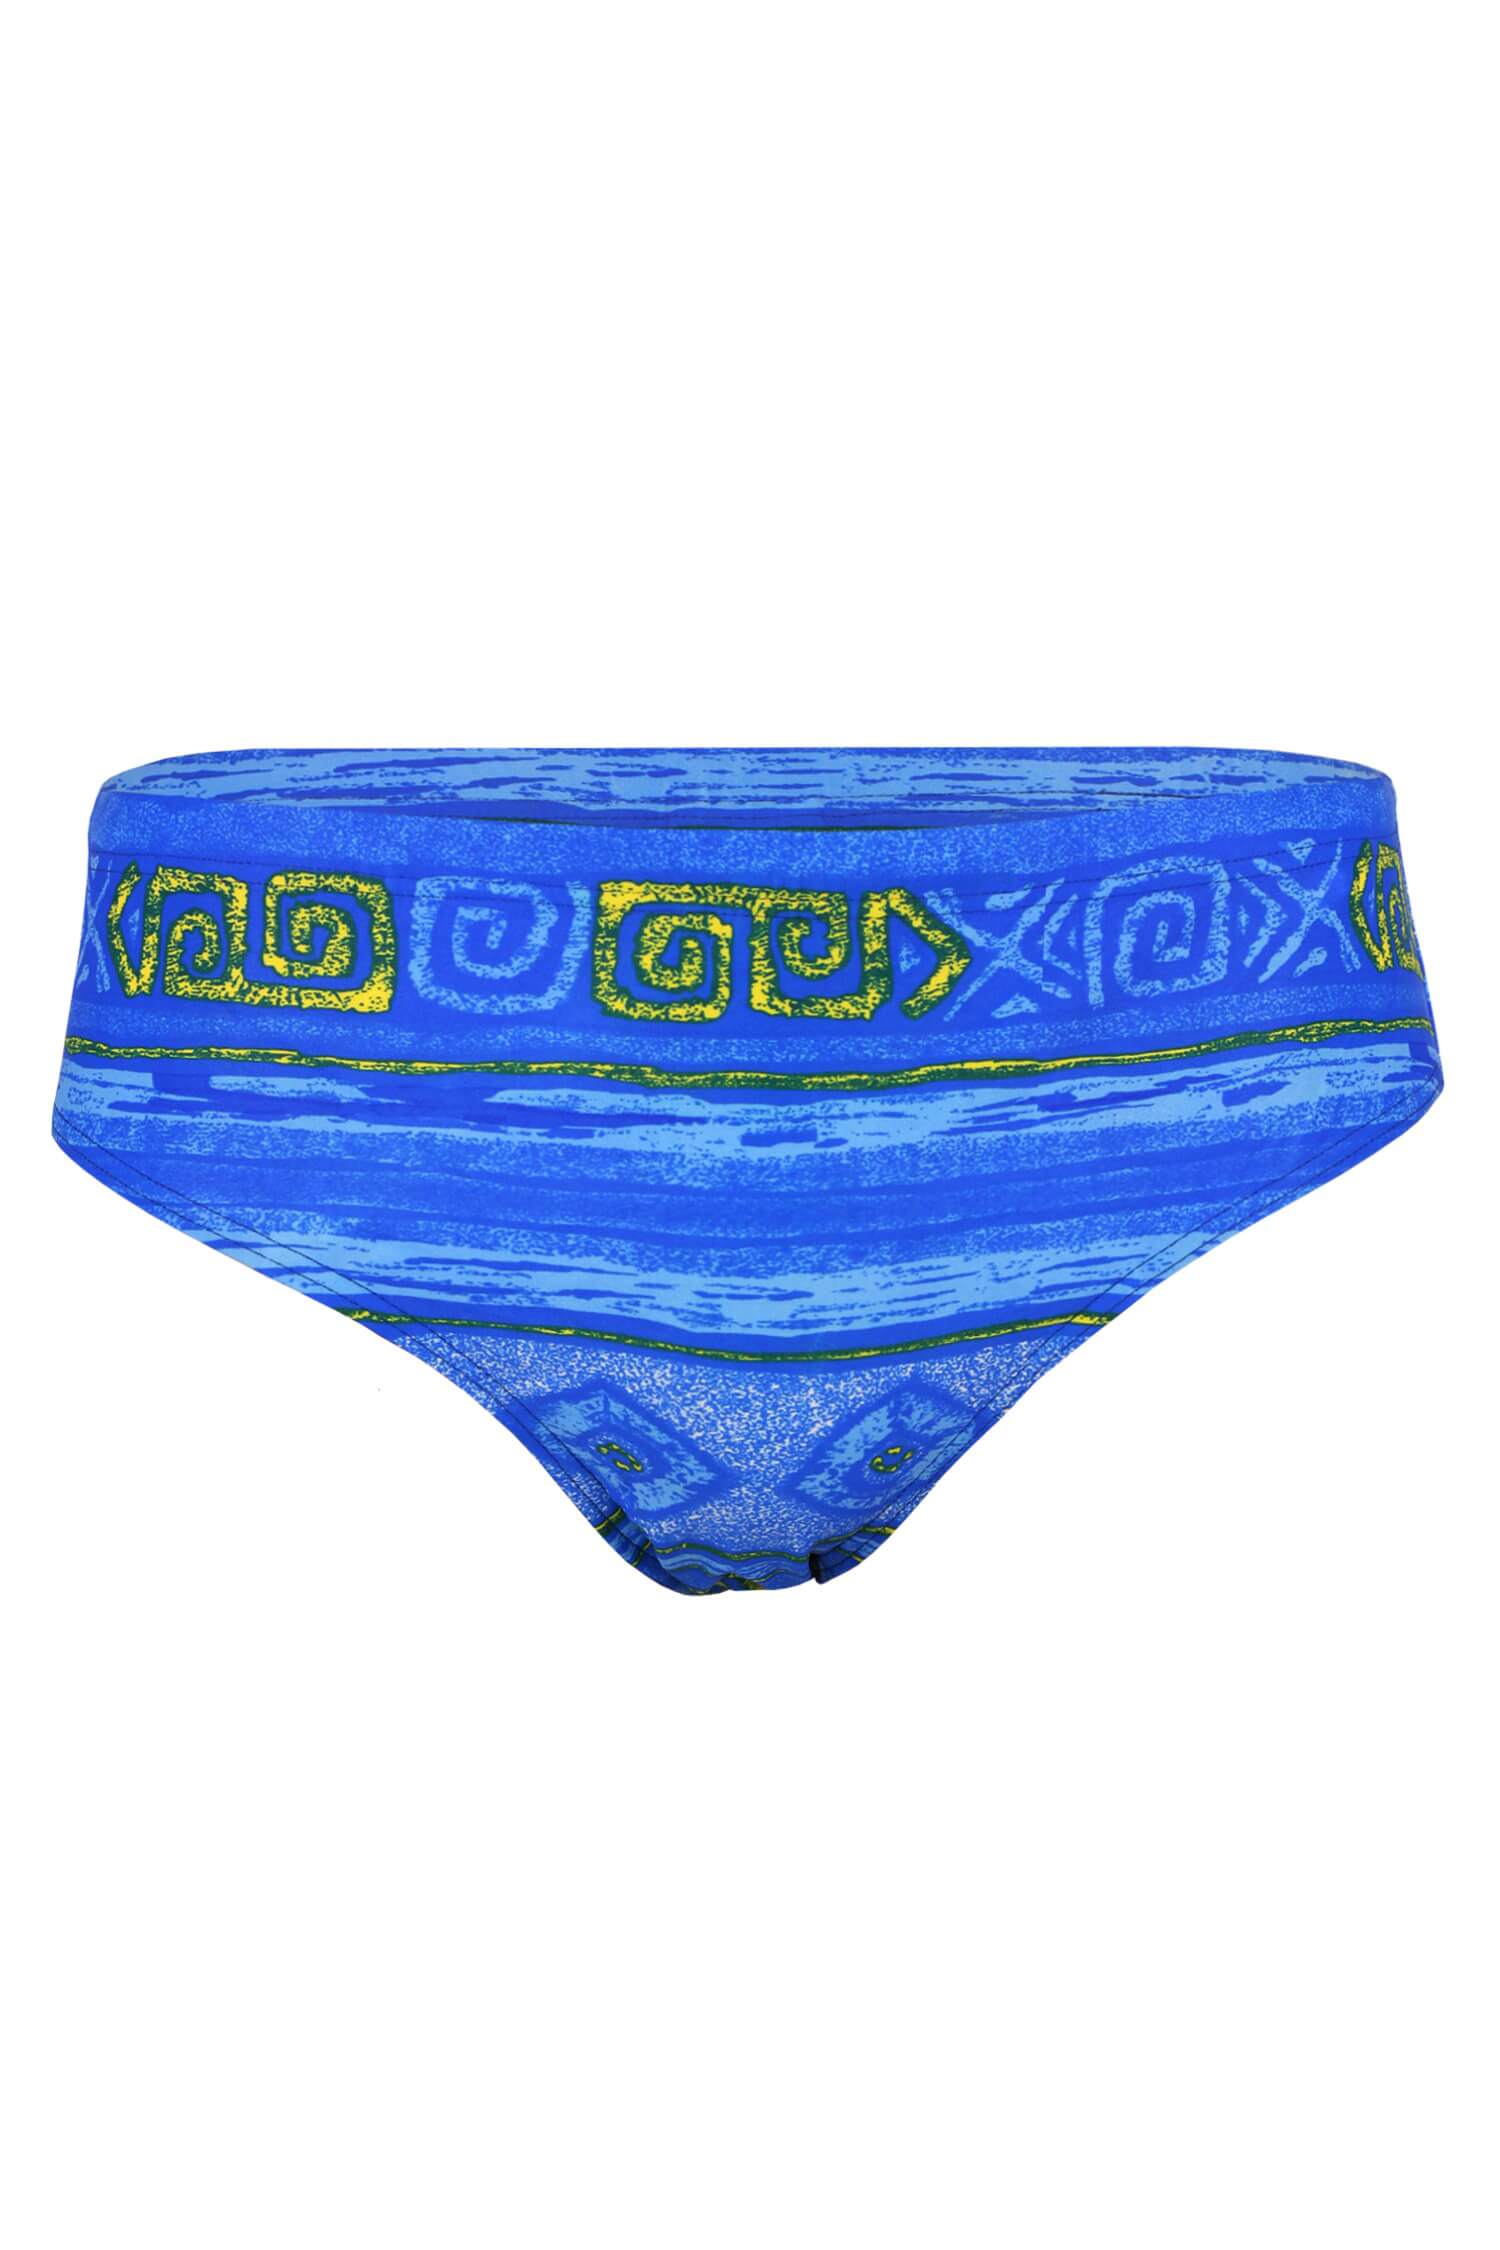 Madera Aztec pánské slipové plavky S modrá